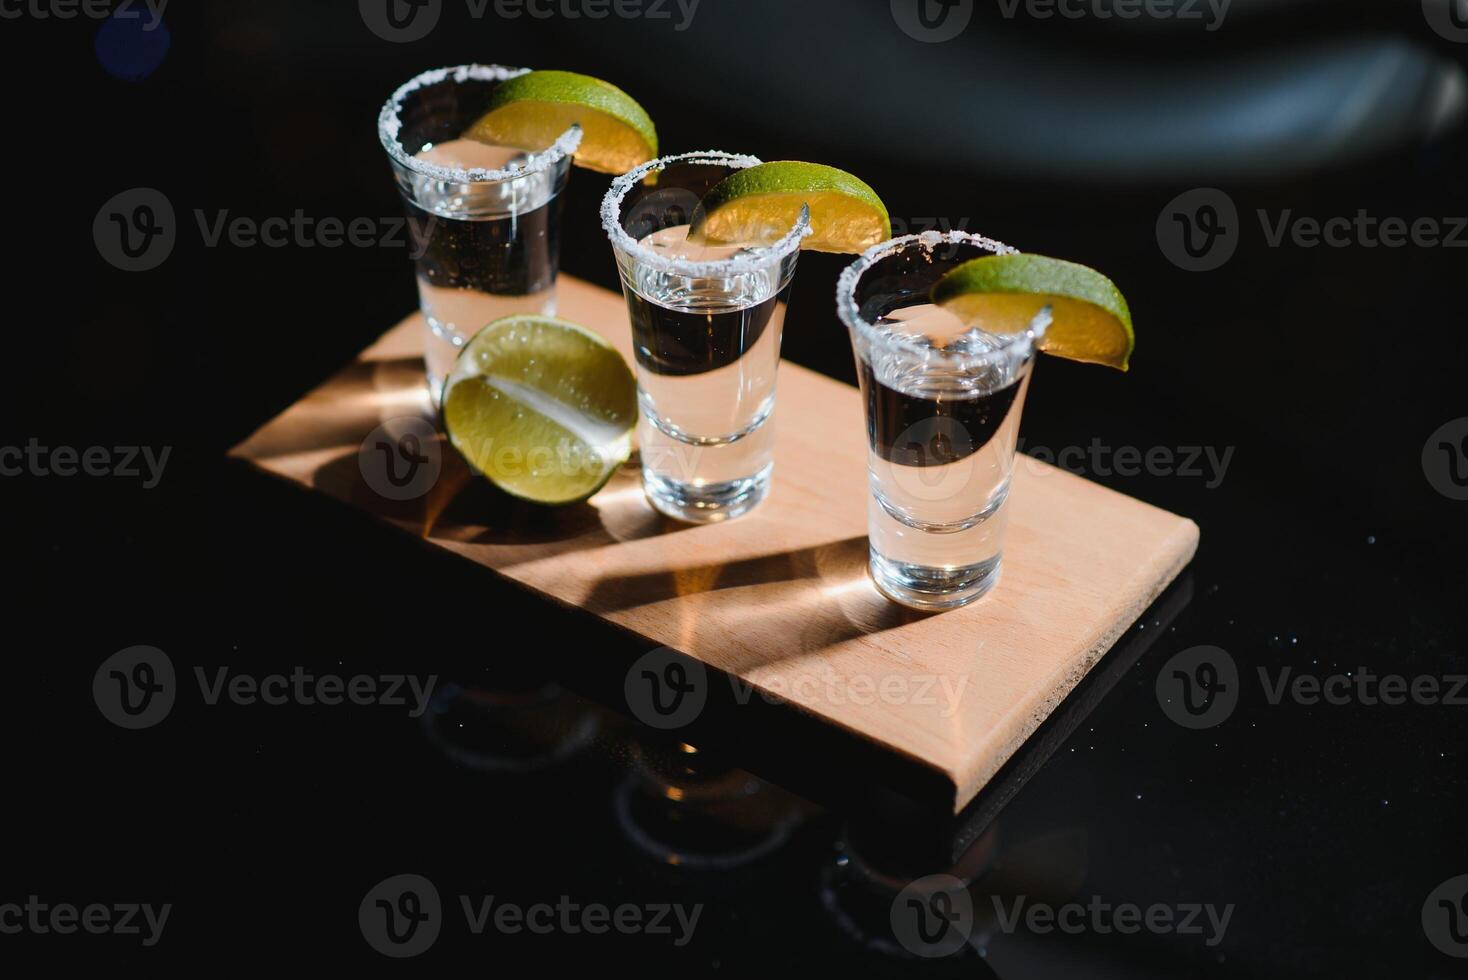 tequila med kalk och salt på svart bakgrund foto